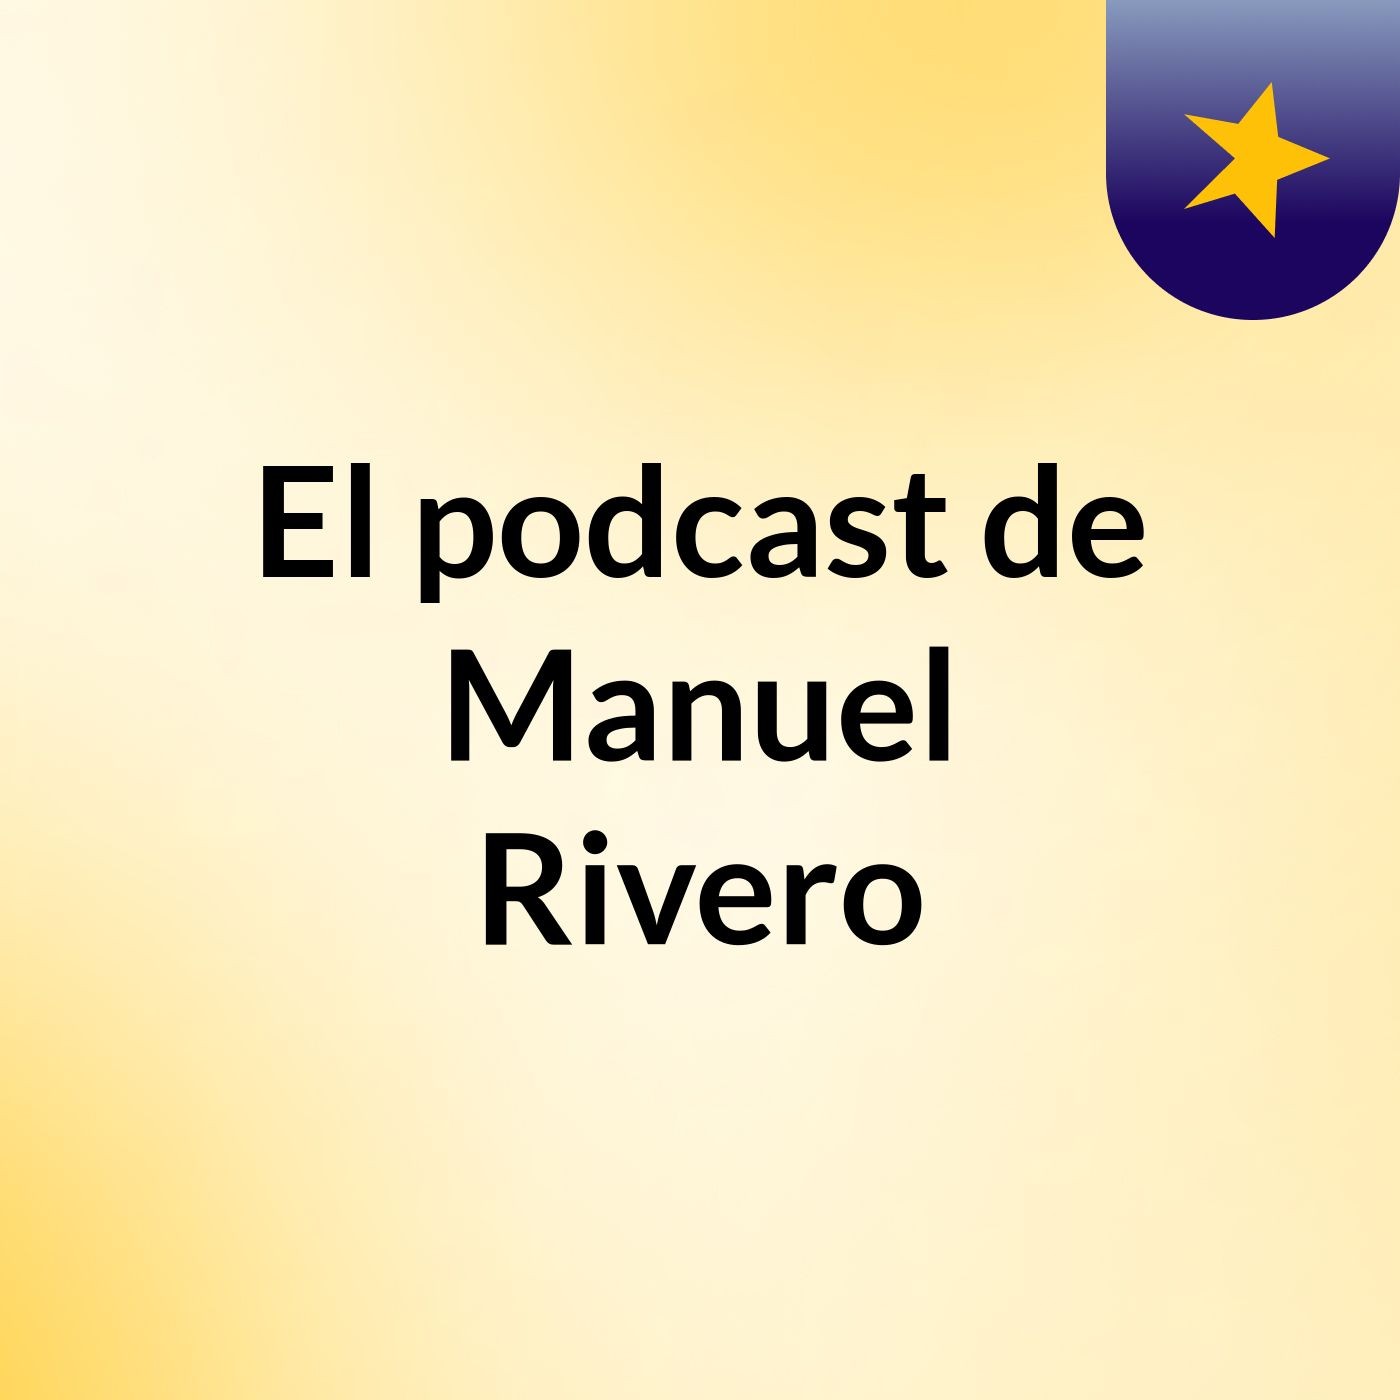 El podcast de Manuel Rivero